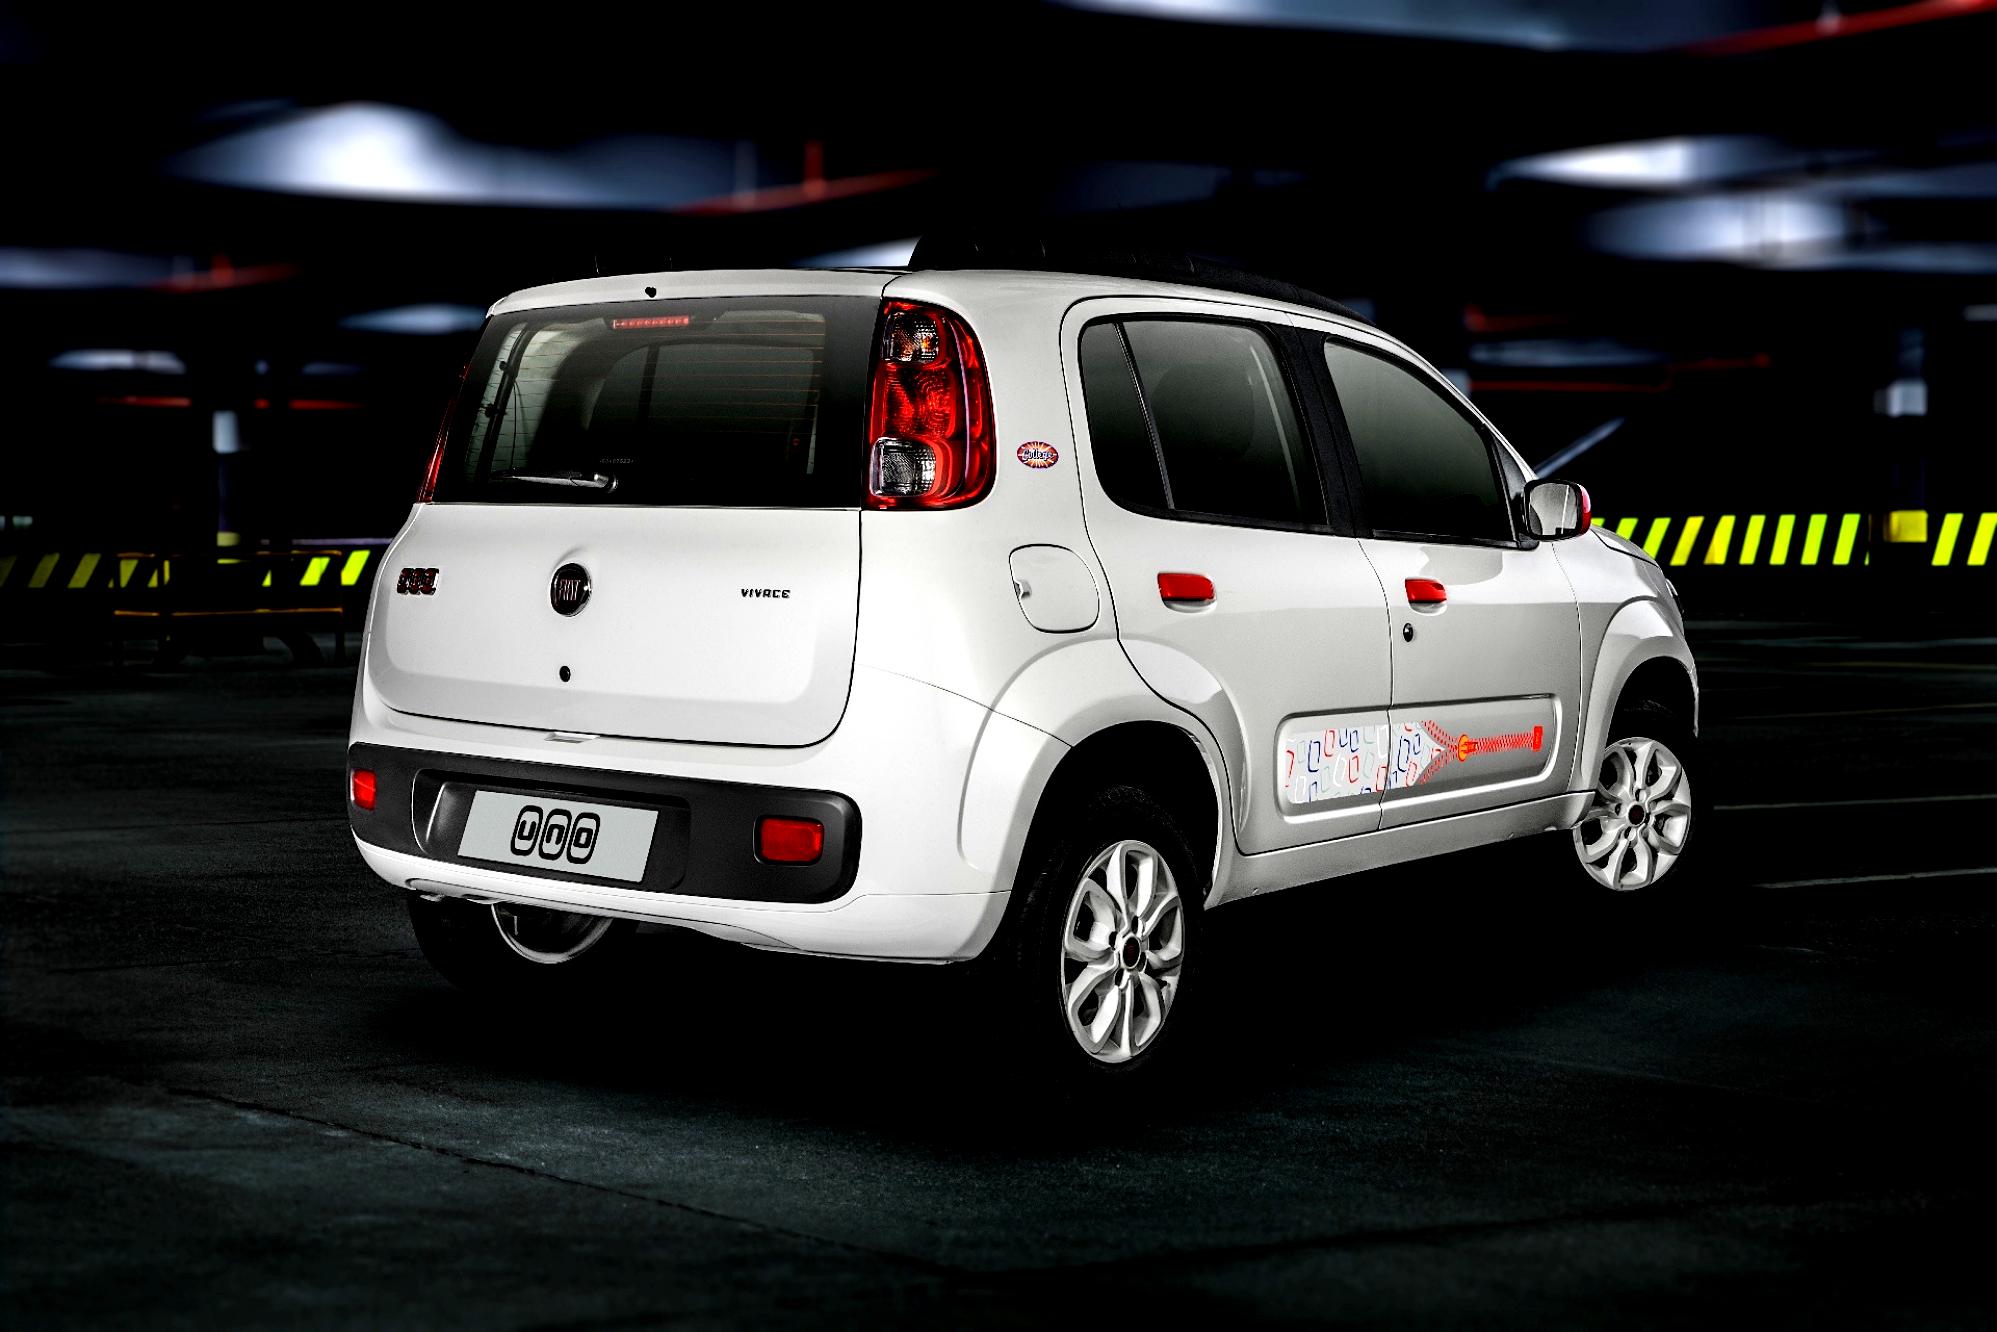 Fiat Uno 2010 #18